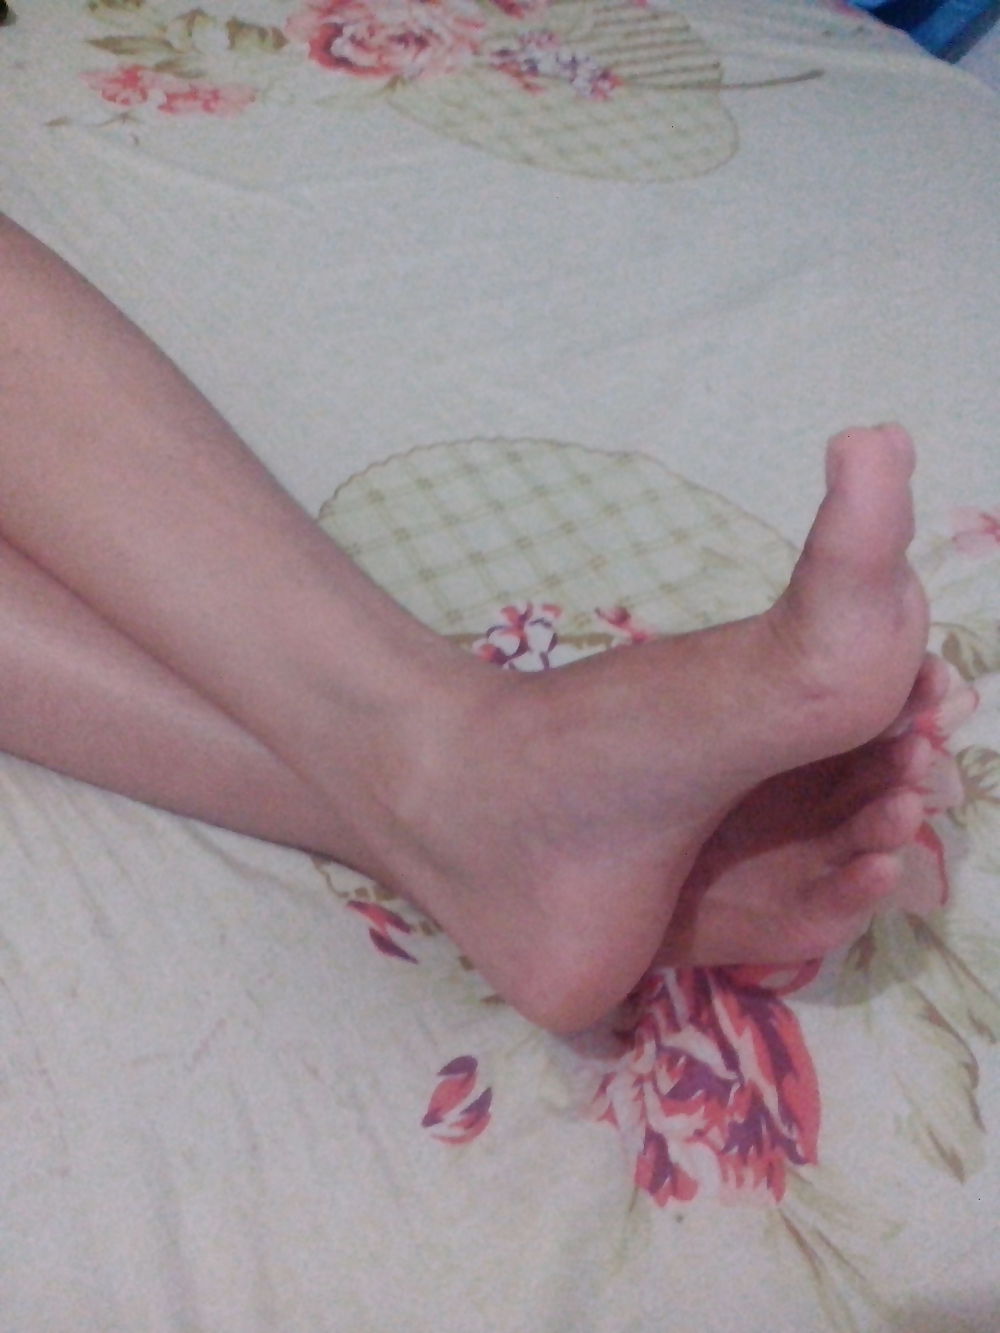 Mein Philippinischer Gf Füße #20222266